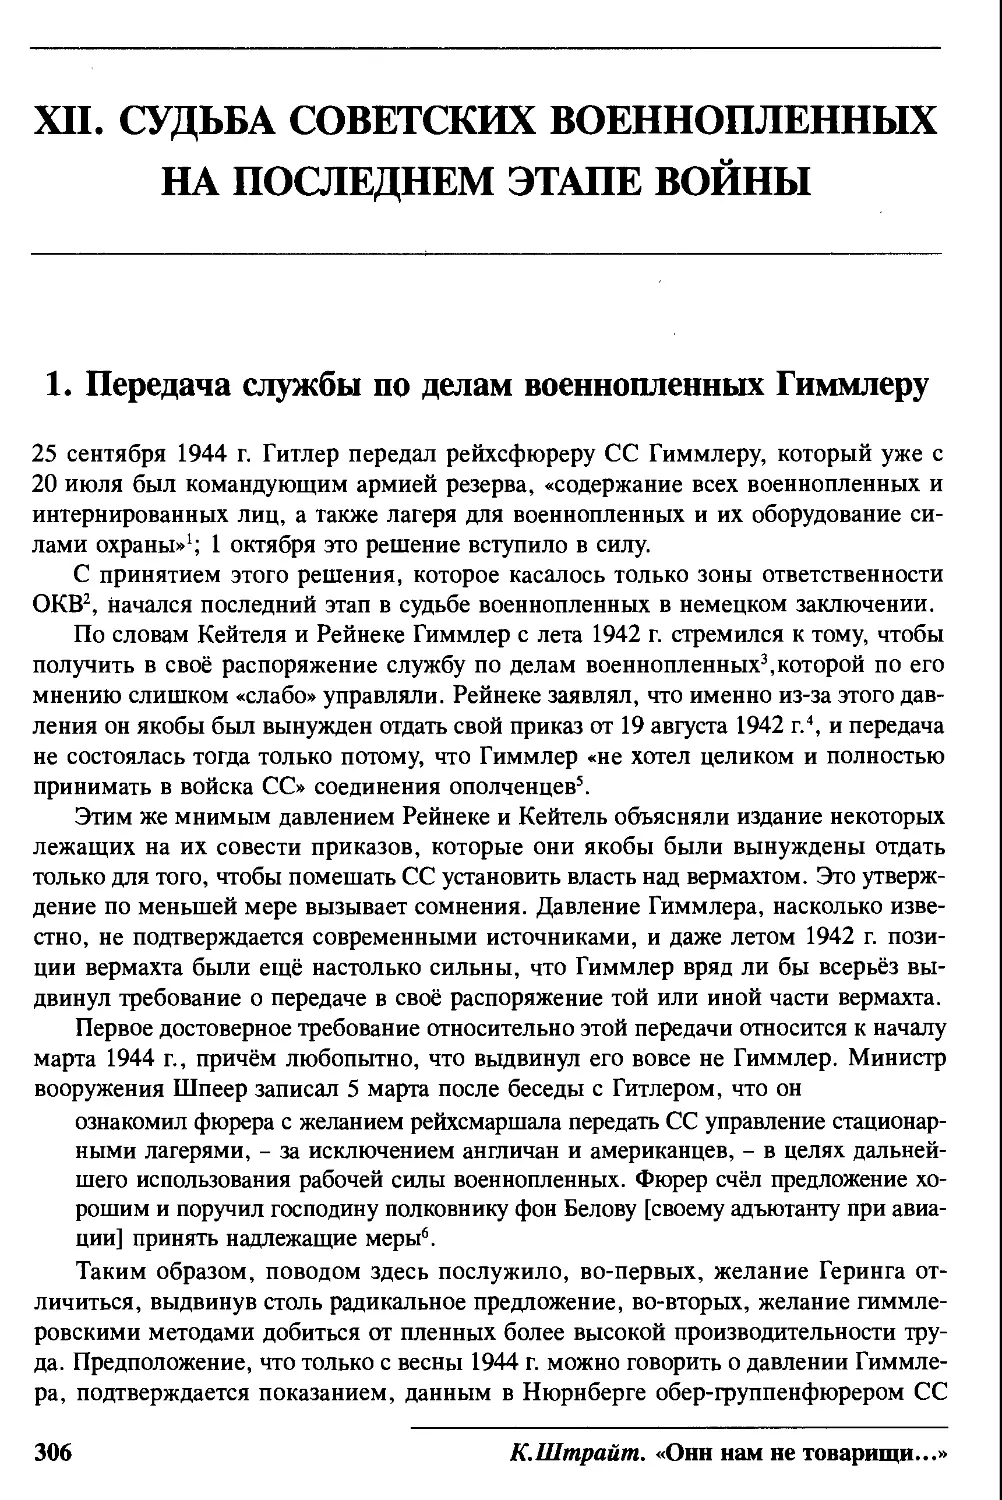 XII. Судьба советских военнопленных на последнем этапе войны